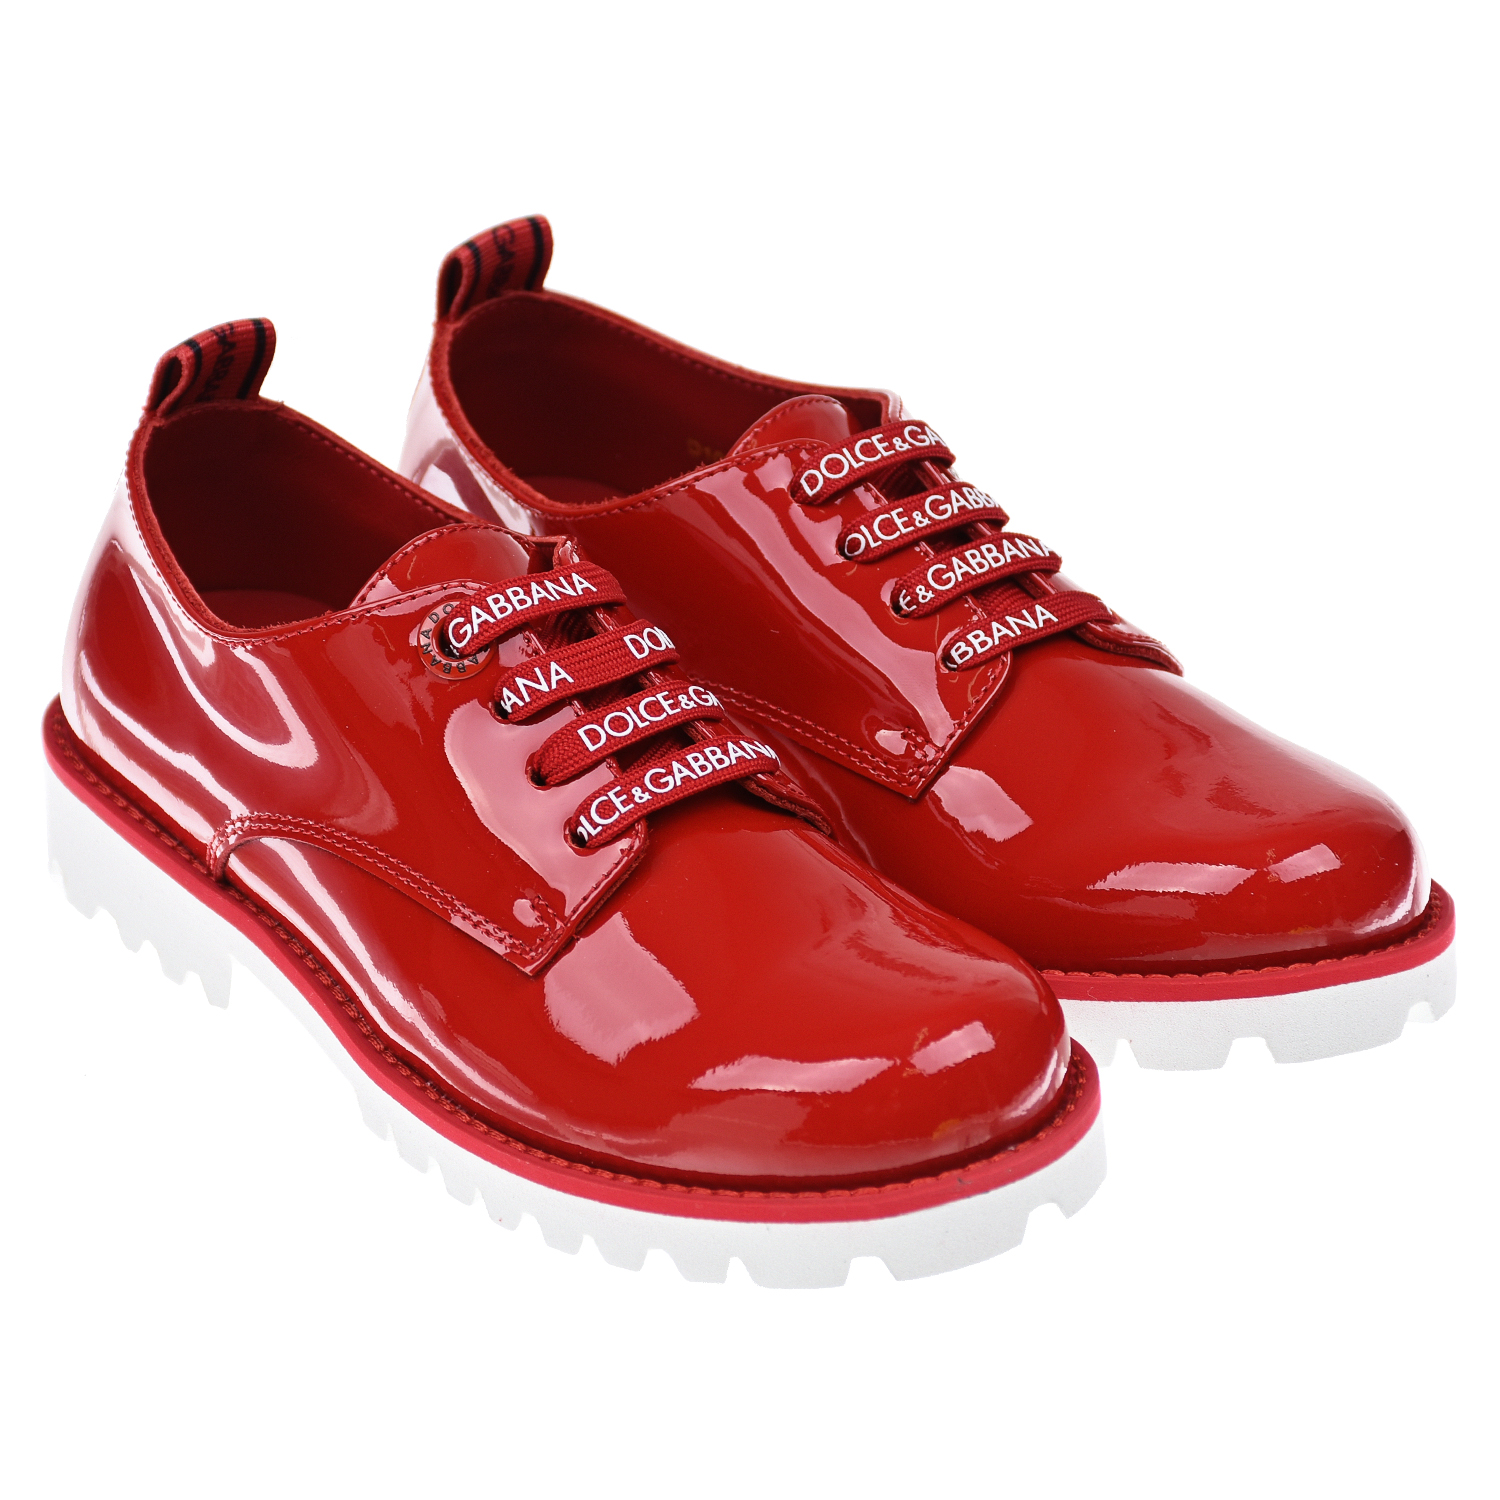 Красные лаковые ботинки Dolce\u0026Gabbana детские для девочек купить в СтаромОсколе и характеристики - SKU6693377